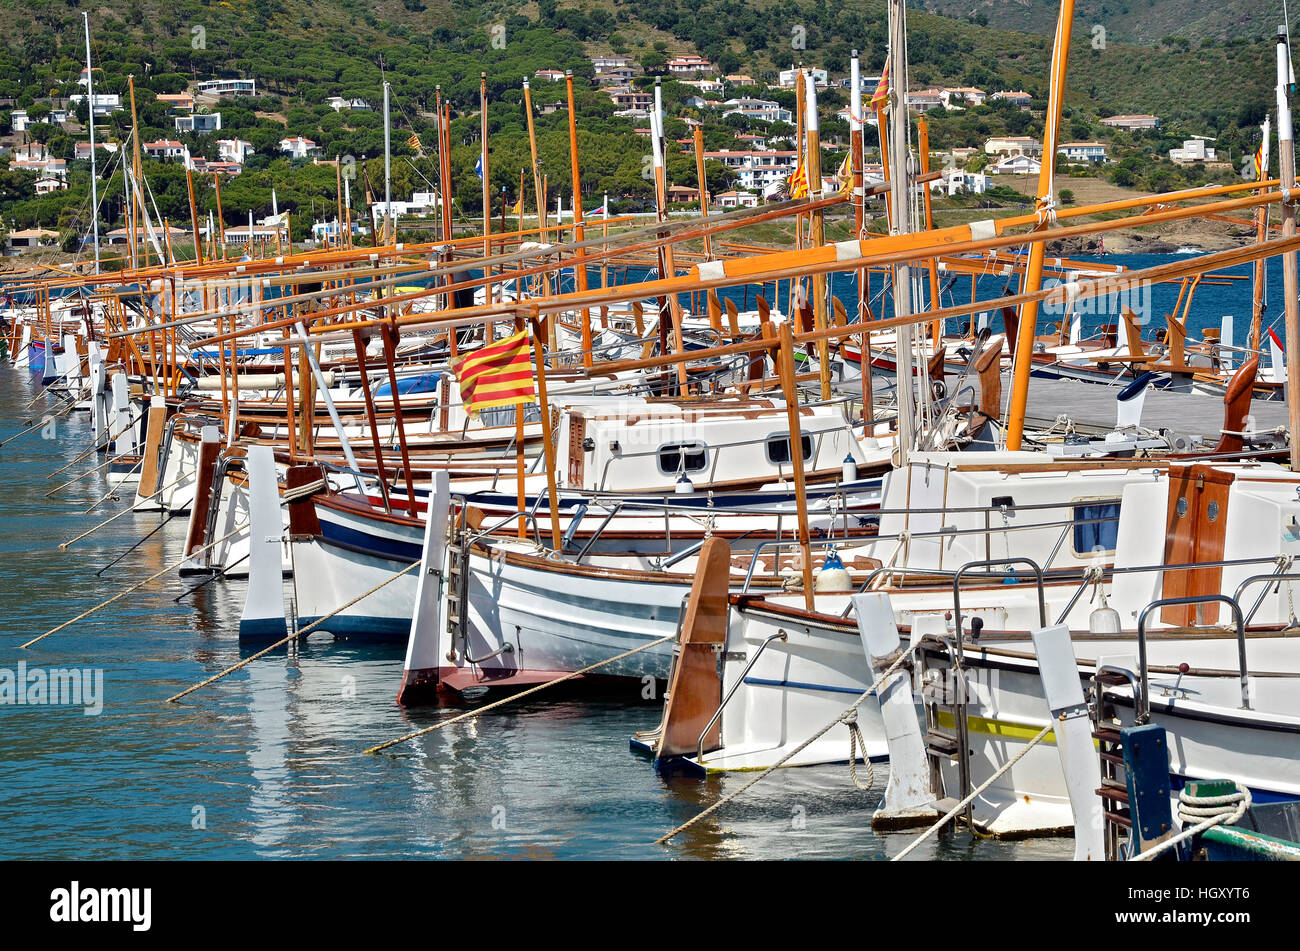 Boats at El Port de la Selva in Spain Stock Photo